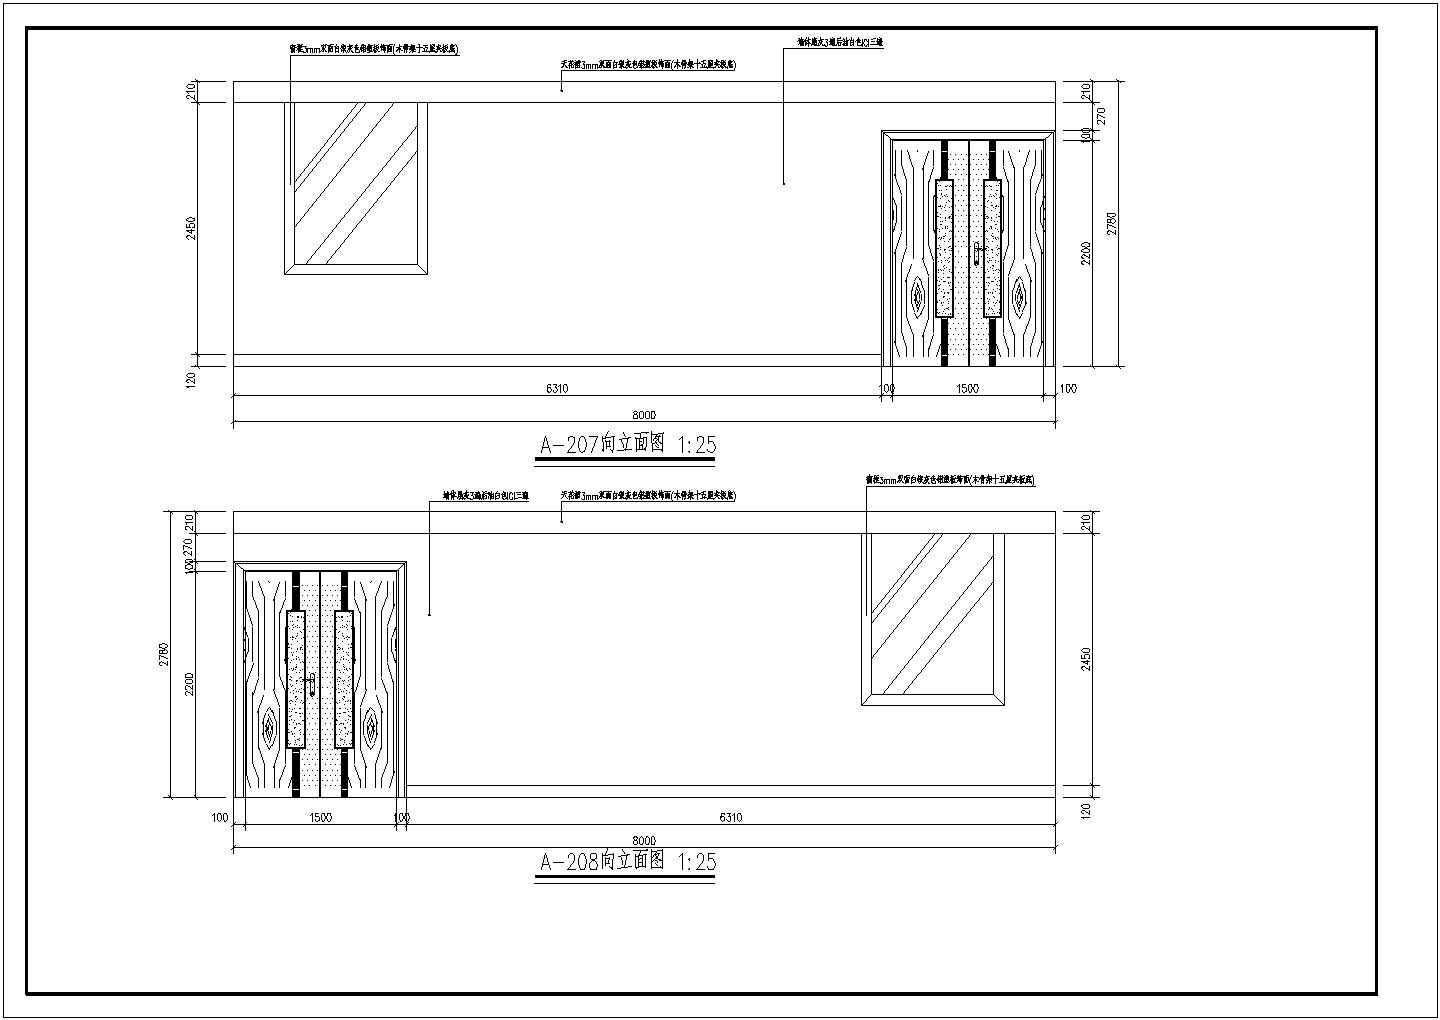 安徽省某直属单位大堂办公室装饰cad立面设计施工图